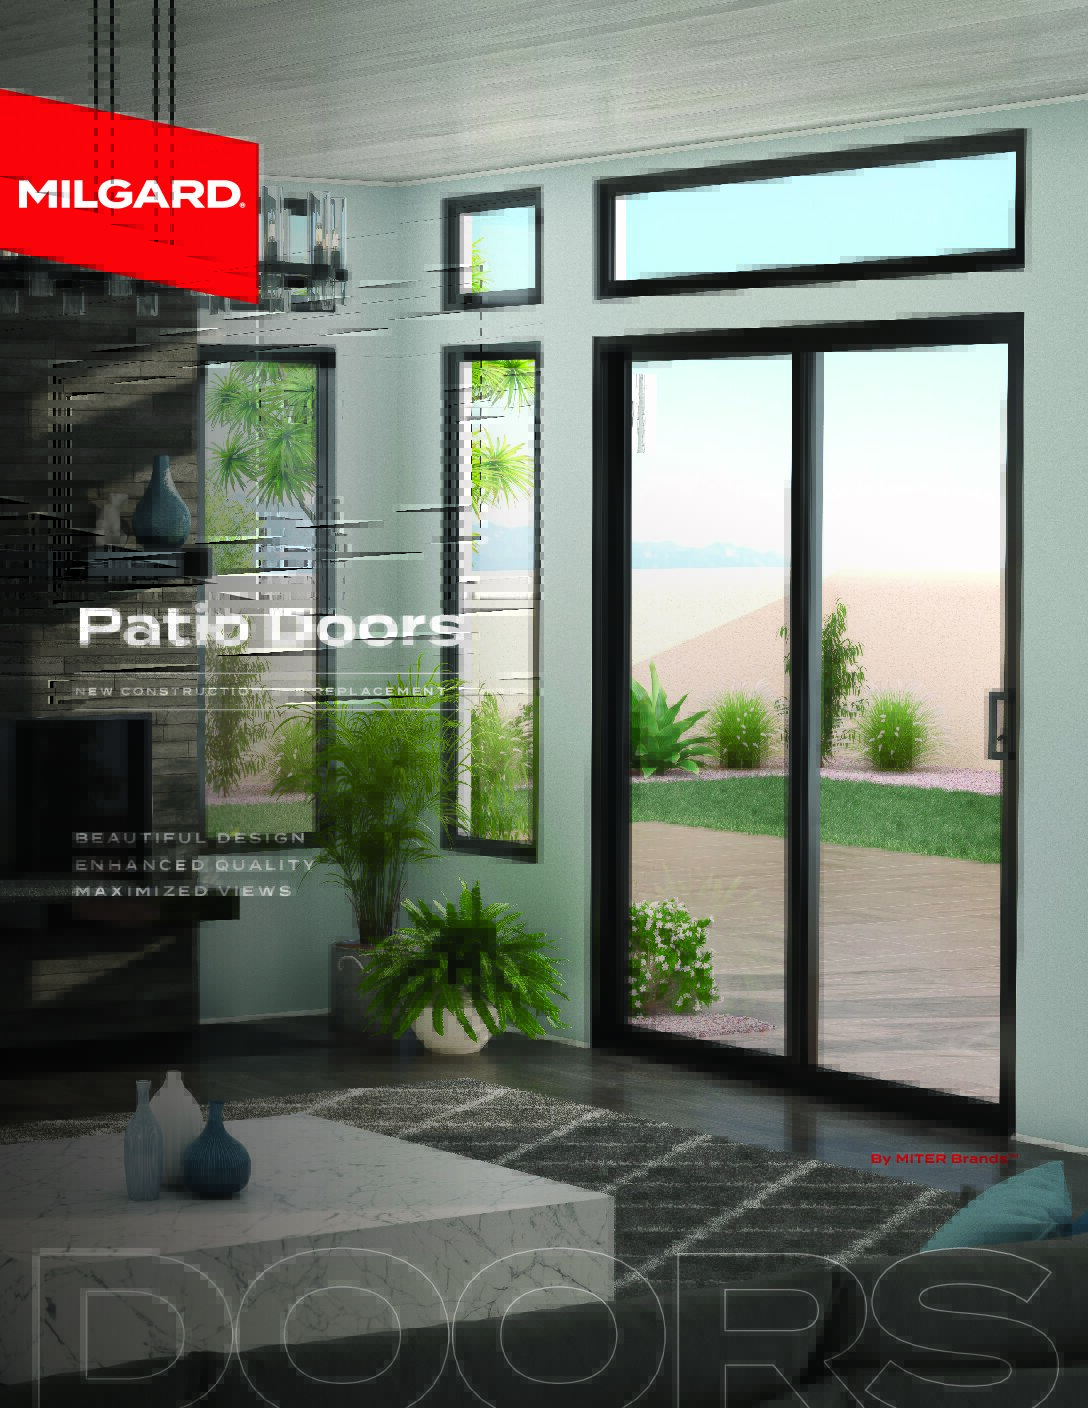 Modern patio doors with sleek design maximizing views.